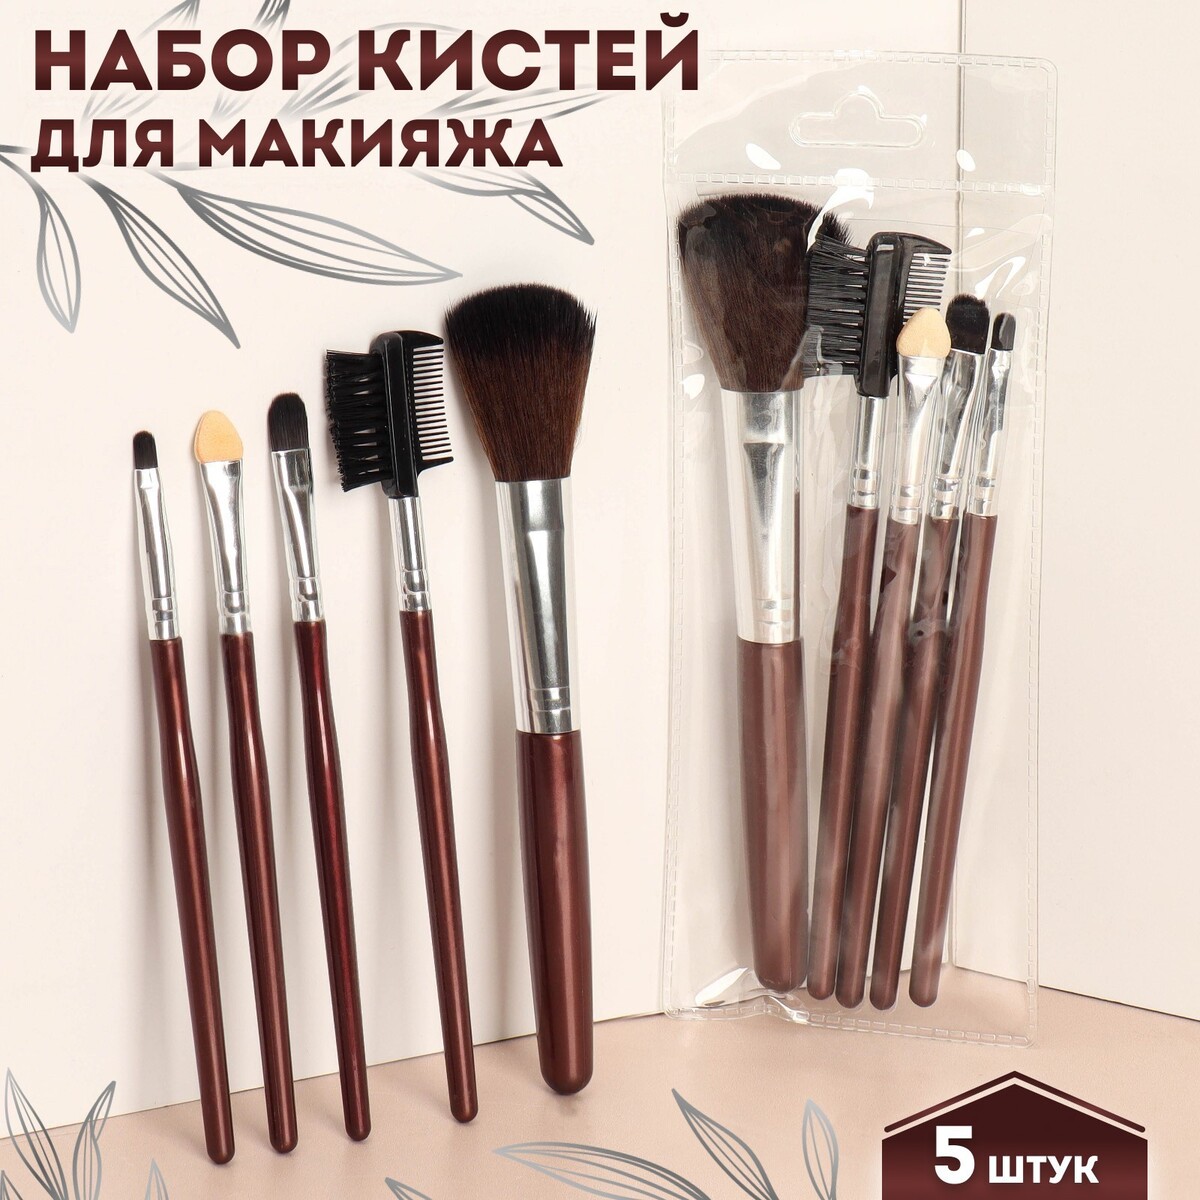 Набор кистей для макияжа, 5 предметов, цвет темно-коричневый